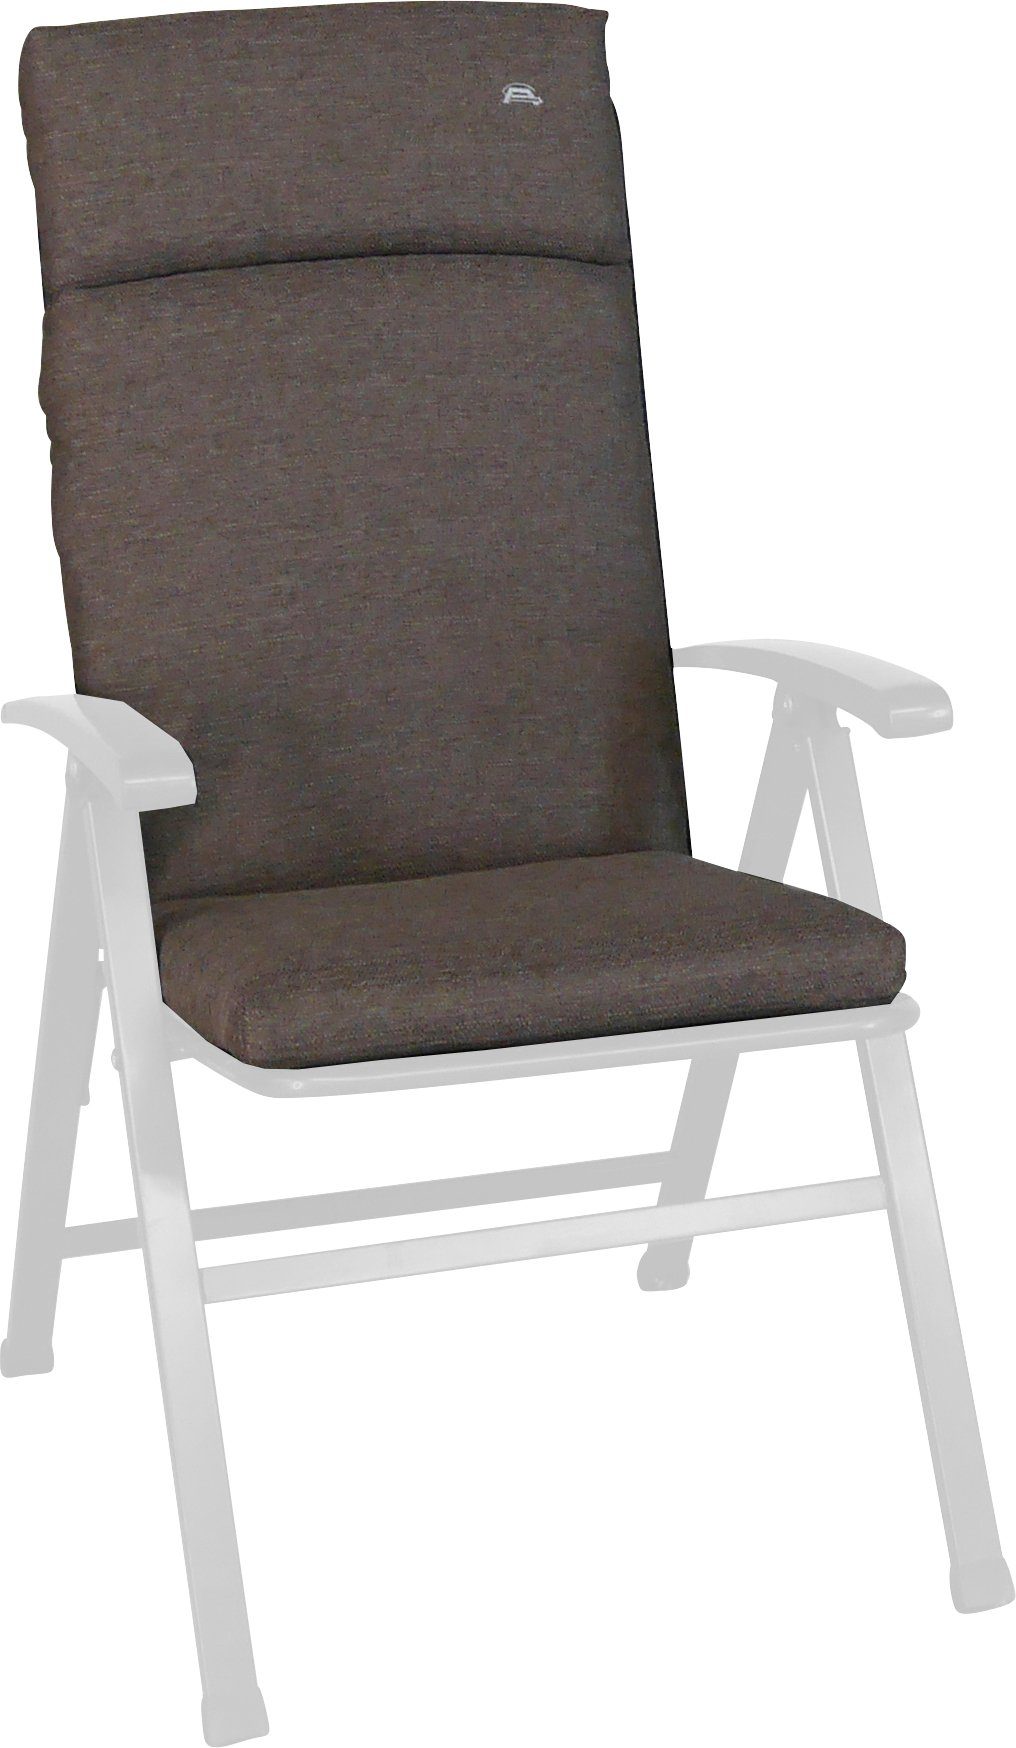 Angerer Freizeitmöbel Sesselauflage Smart, cm oliv ca. 47x112 (B/T)